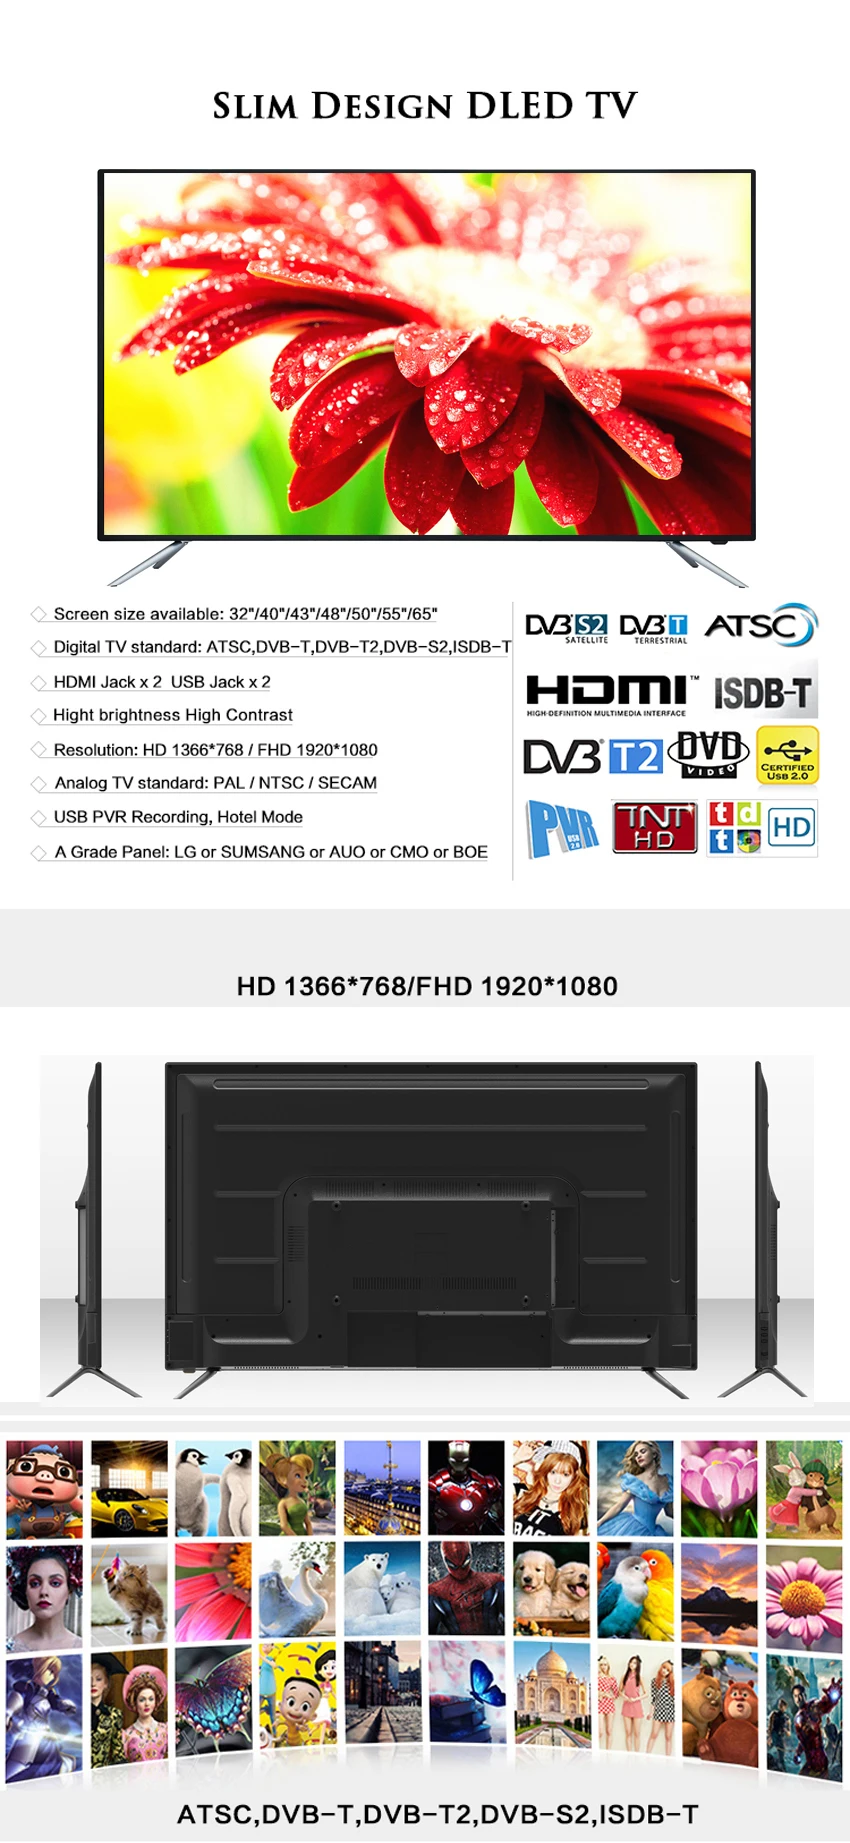 Www Xxx Hdmi Video - Hot China Hd Video Tv Www Xxx,Best Flat Screen Hd 32 55 65 Inch ...